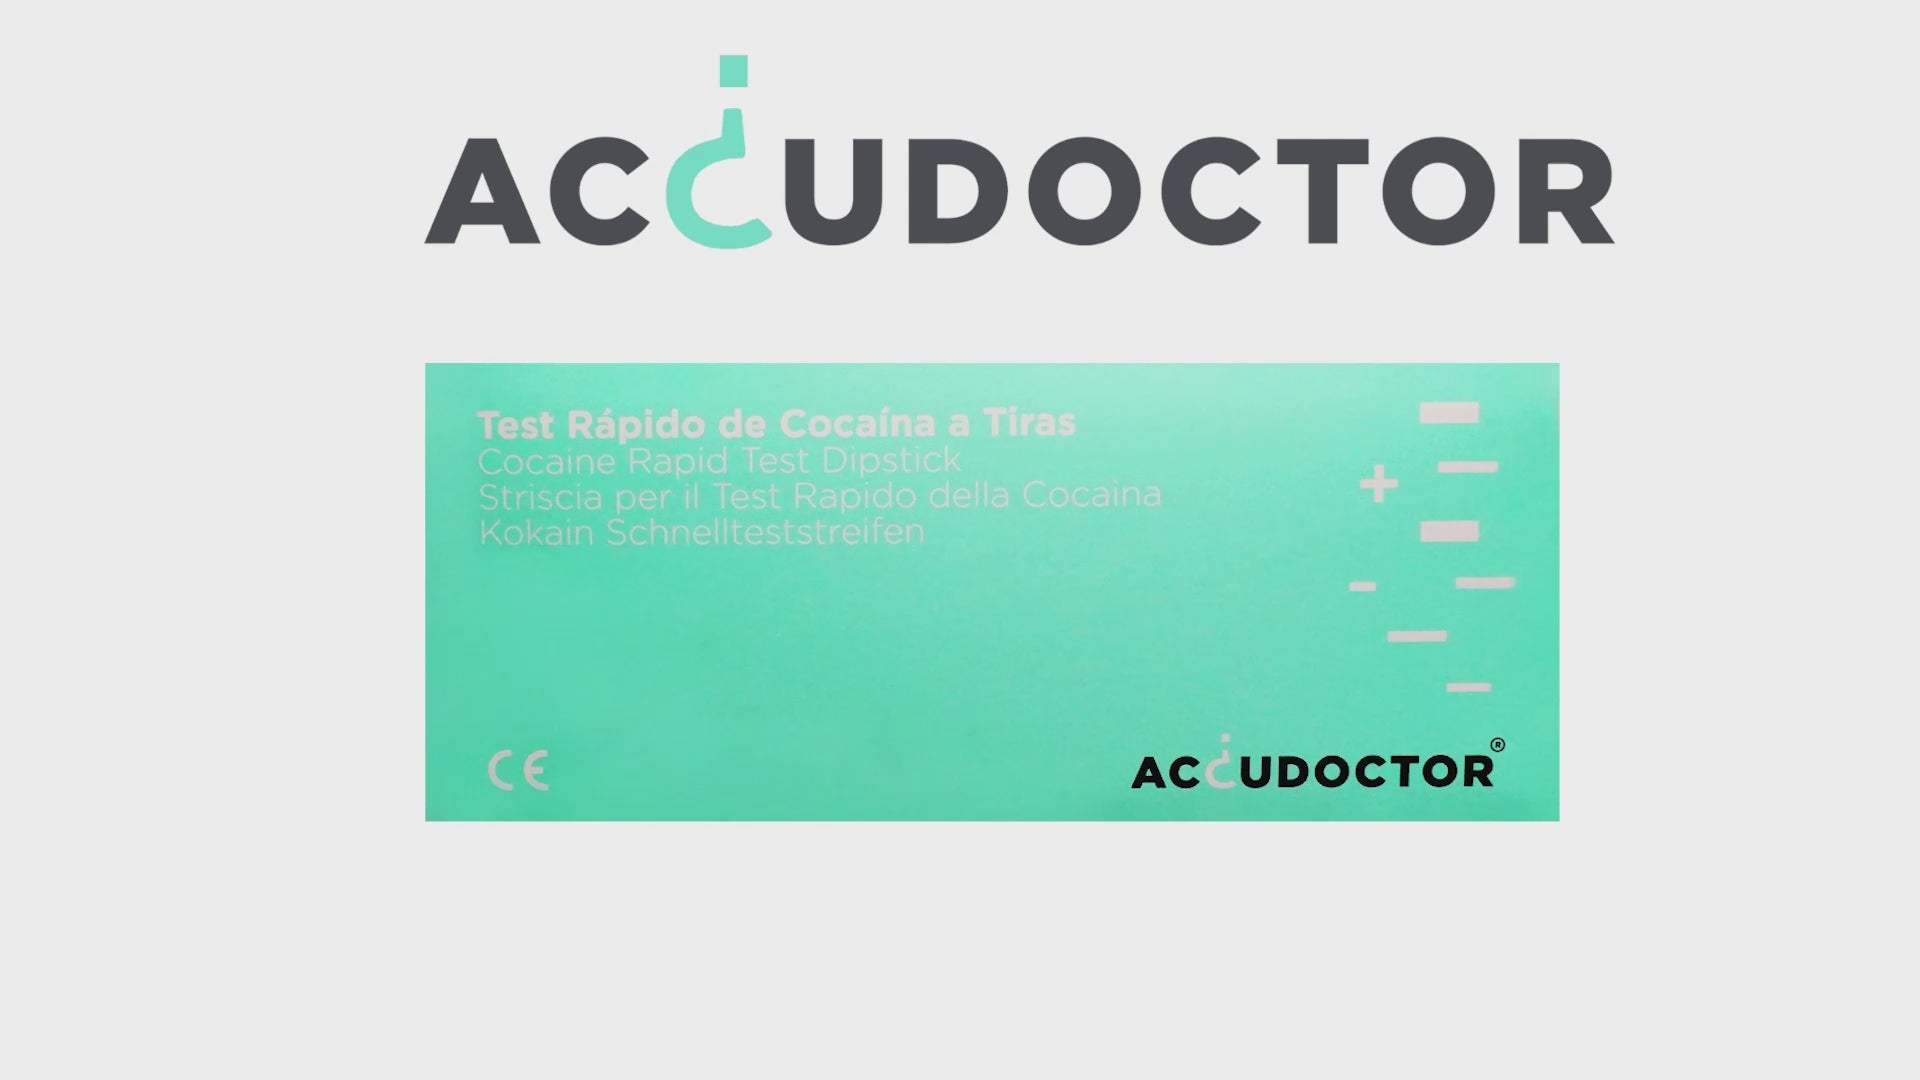 Test Accudoctor Cocaína en Orina - Pack 10 unidades